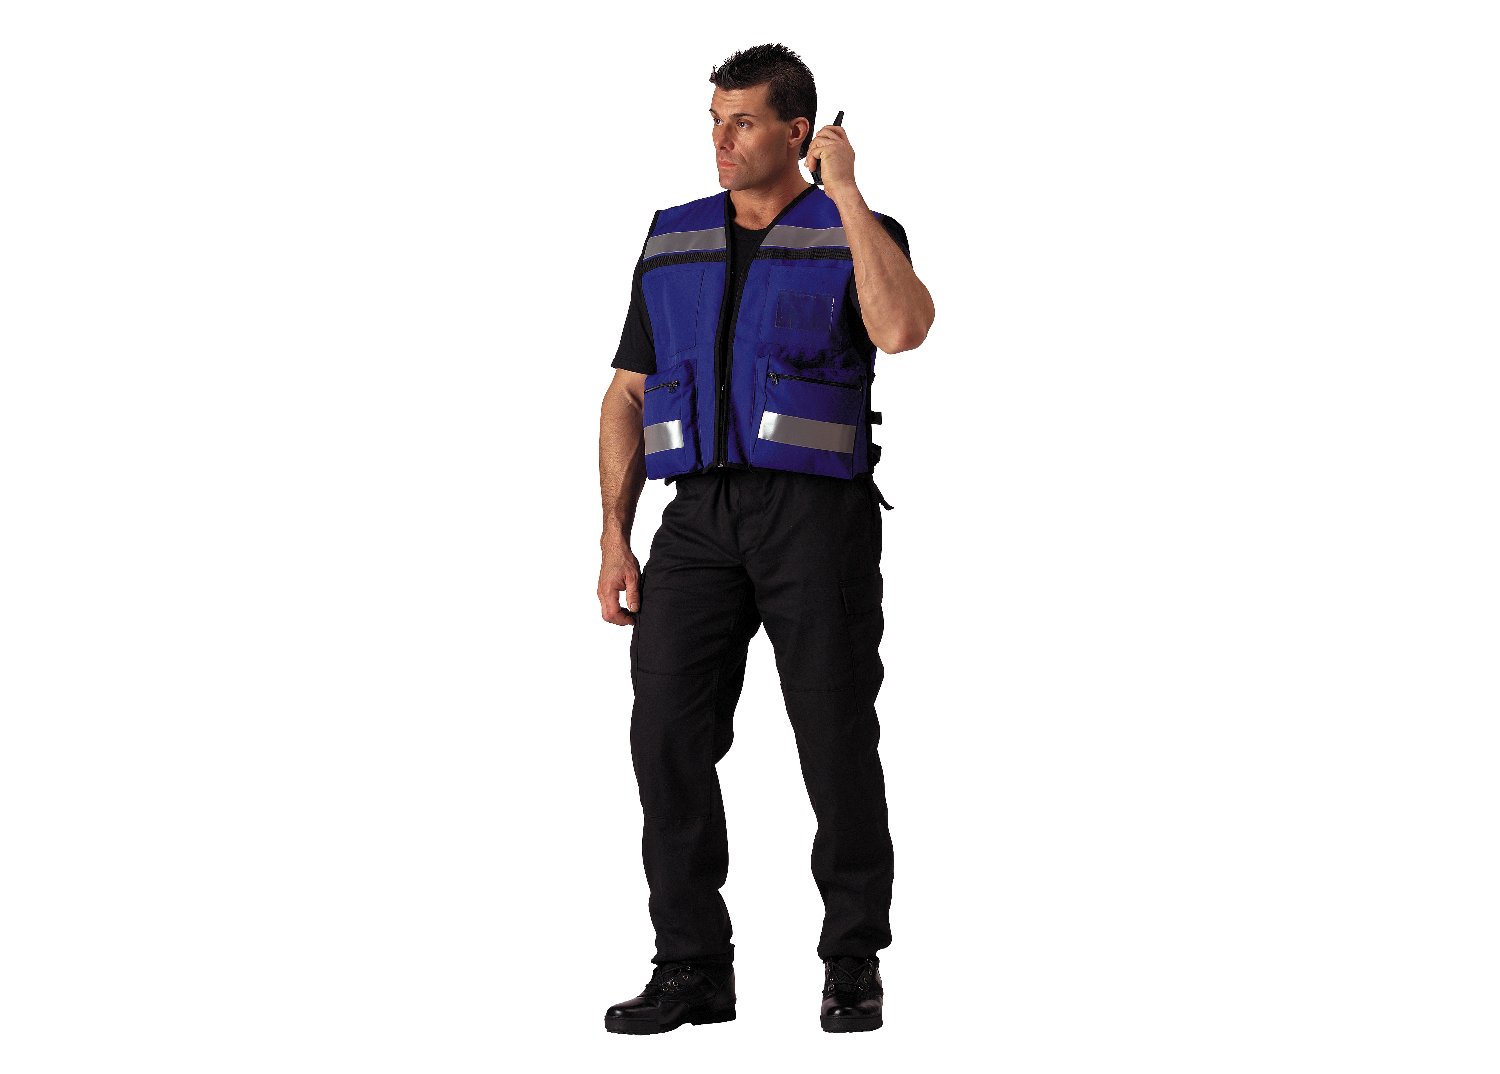 EMS Rescue Vest - Tactical Choice Plus